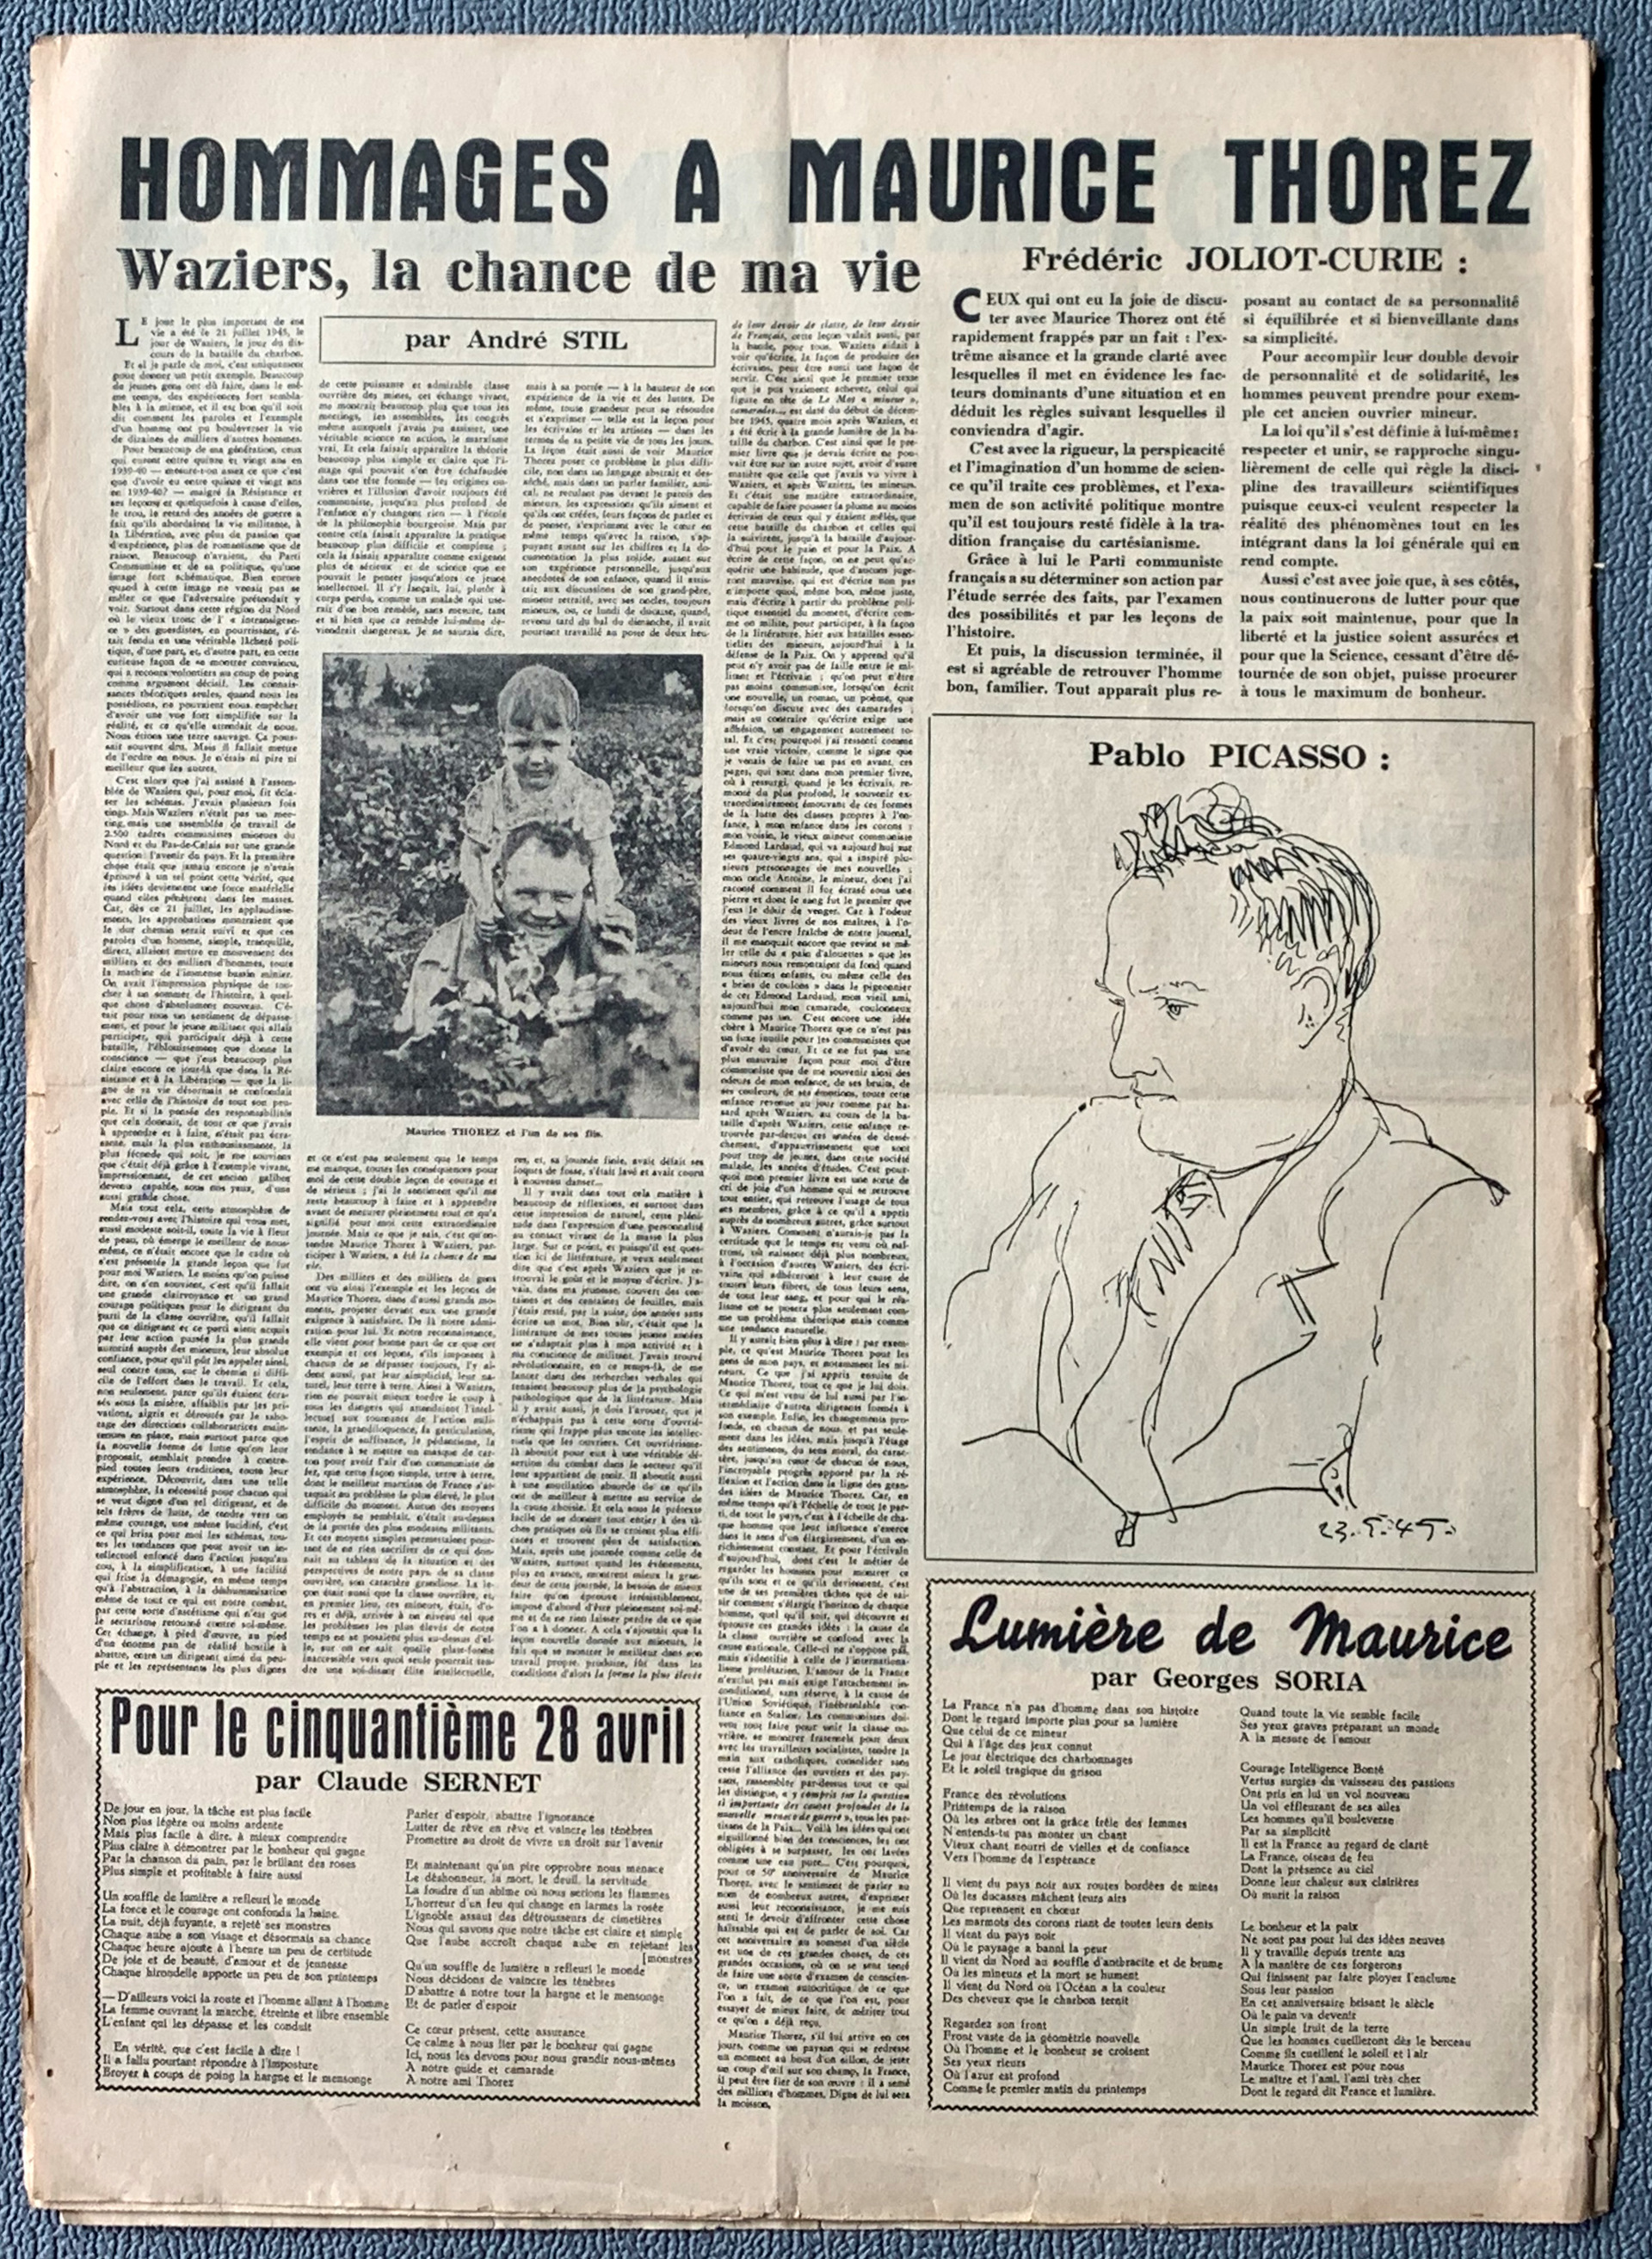 Les Lettres francaises  309 -- 27. April 1950  ...